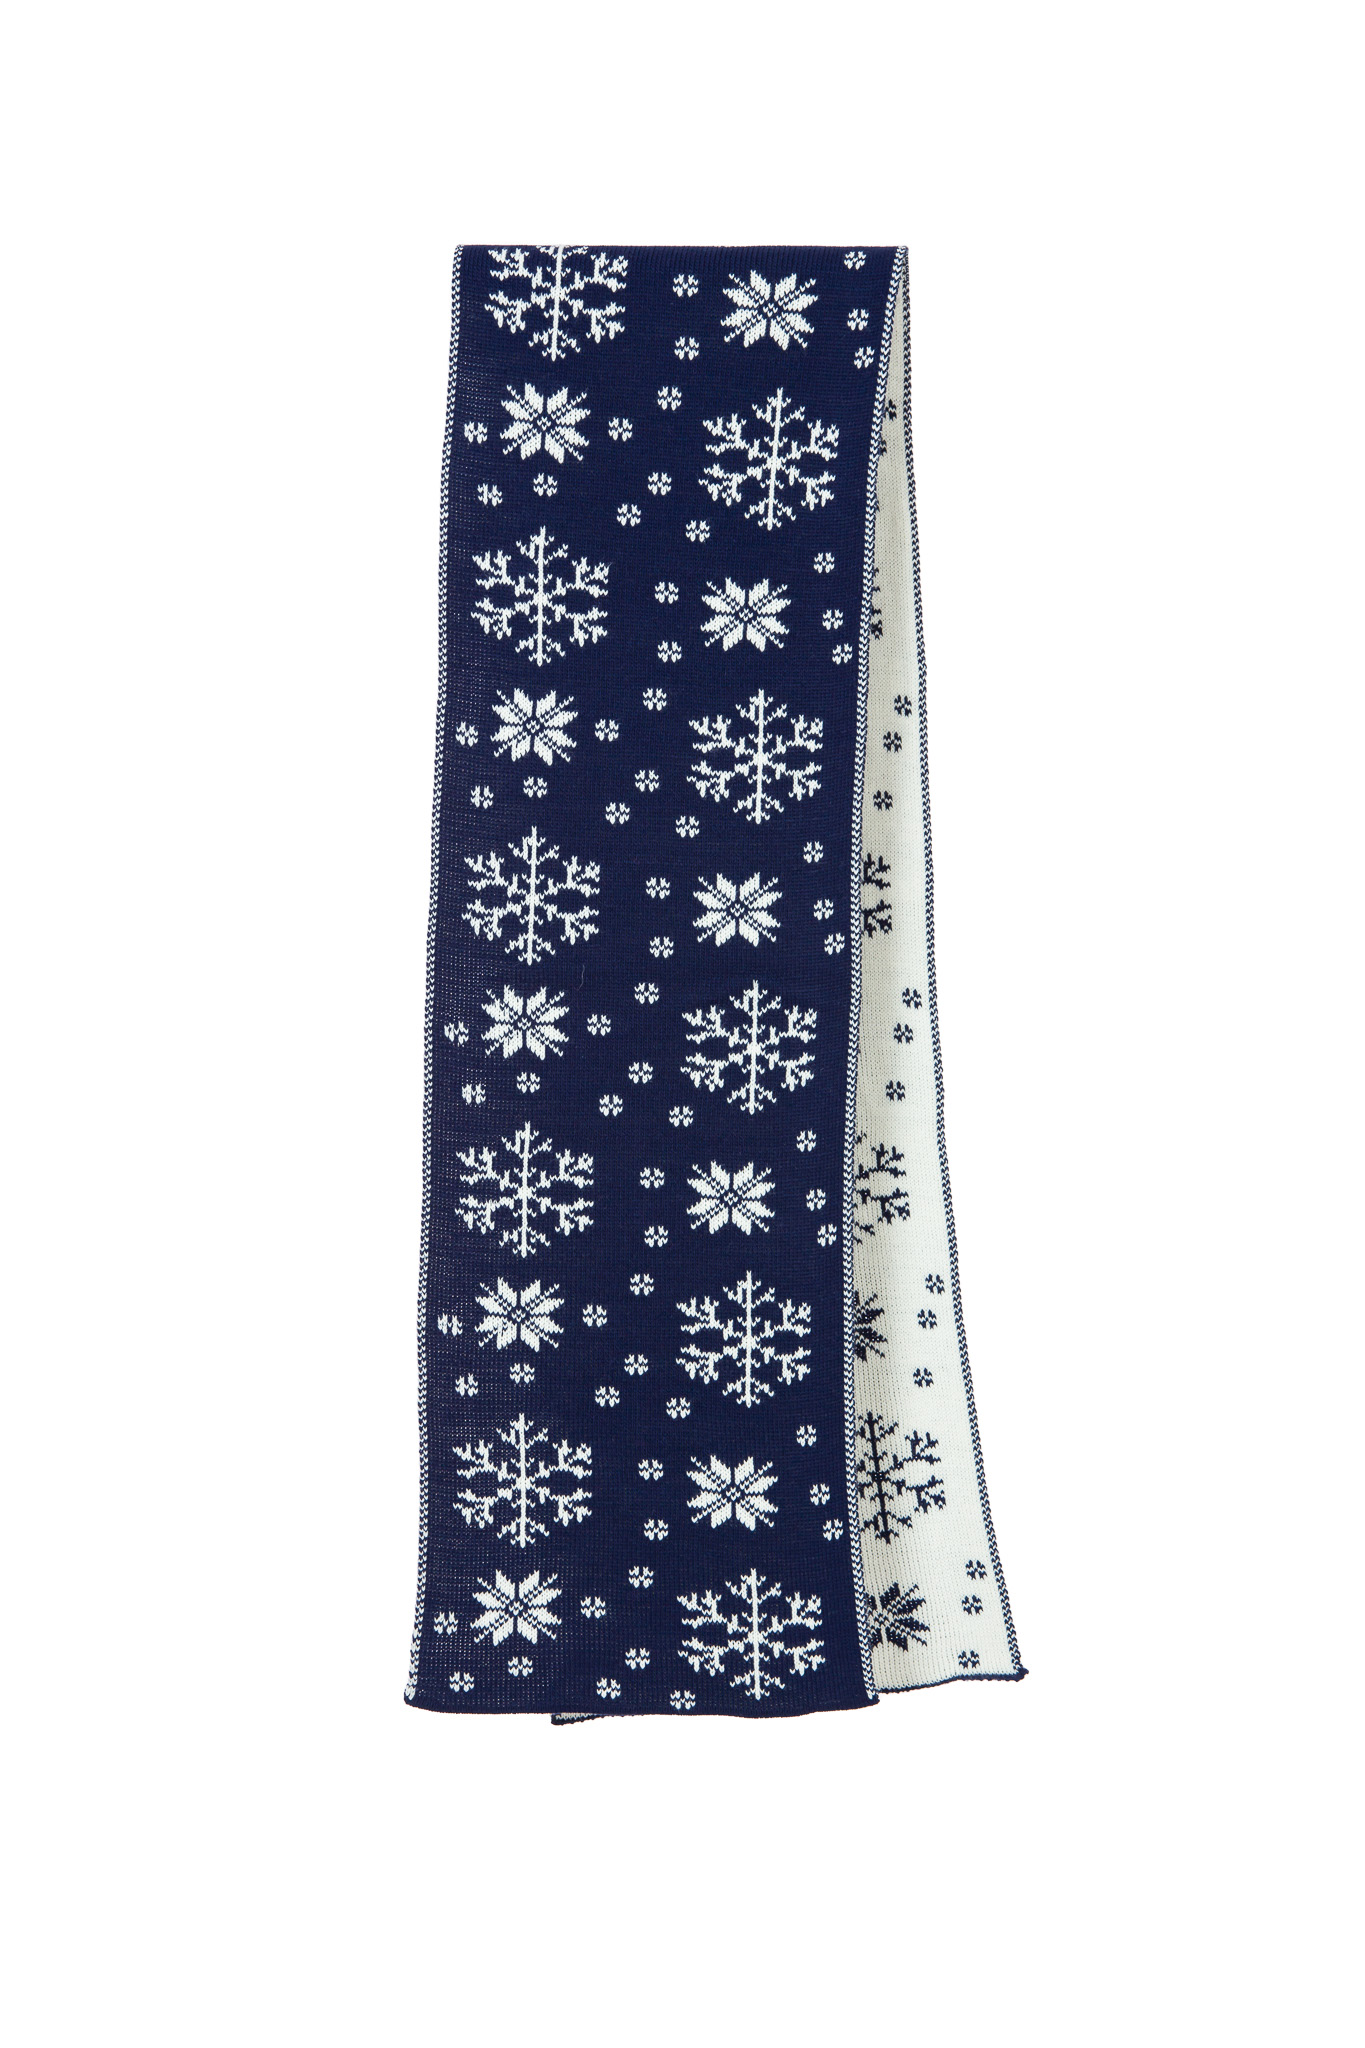 Fular bărbătesc albastru tricotat de Crăciun, cu fulgi albi de nea și reni. Desen jacard, fir moale, plăcut la atingere. Fulgar iarnă fabricat în România.